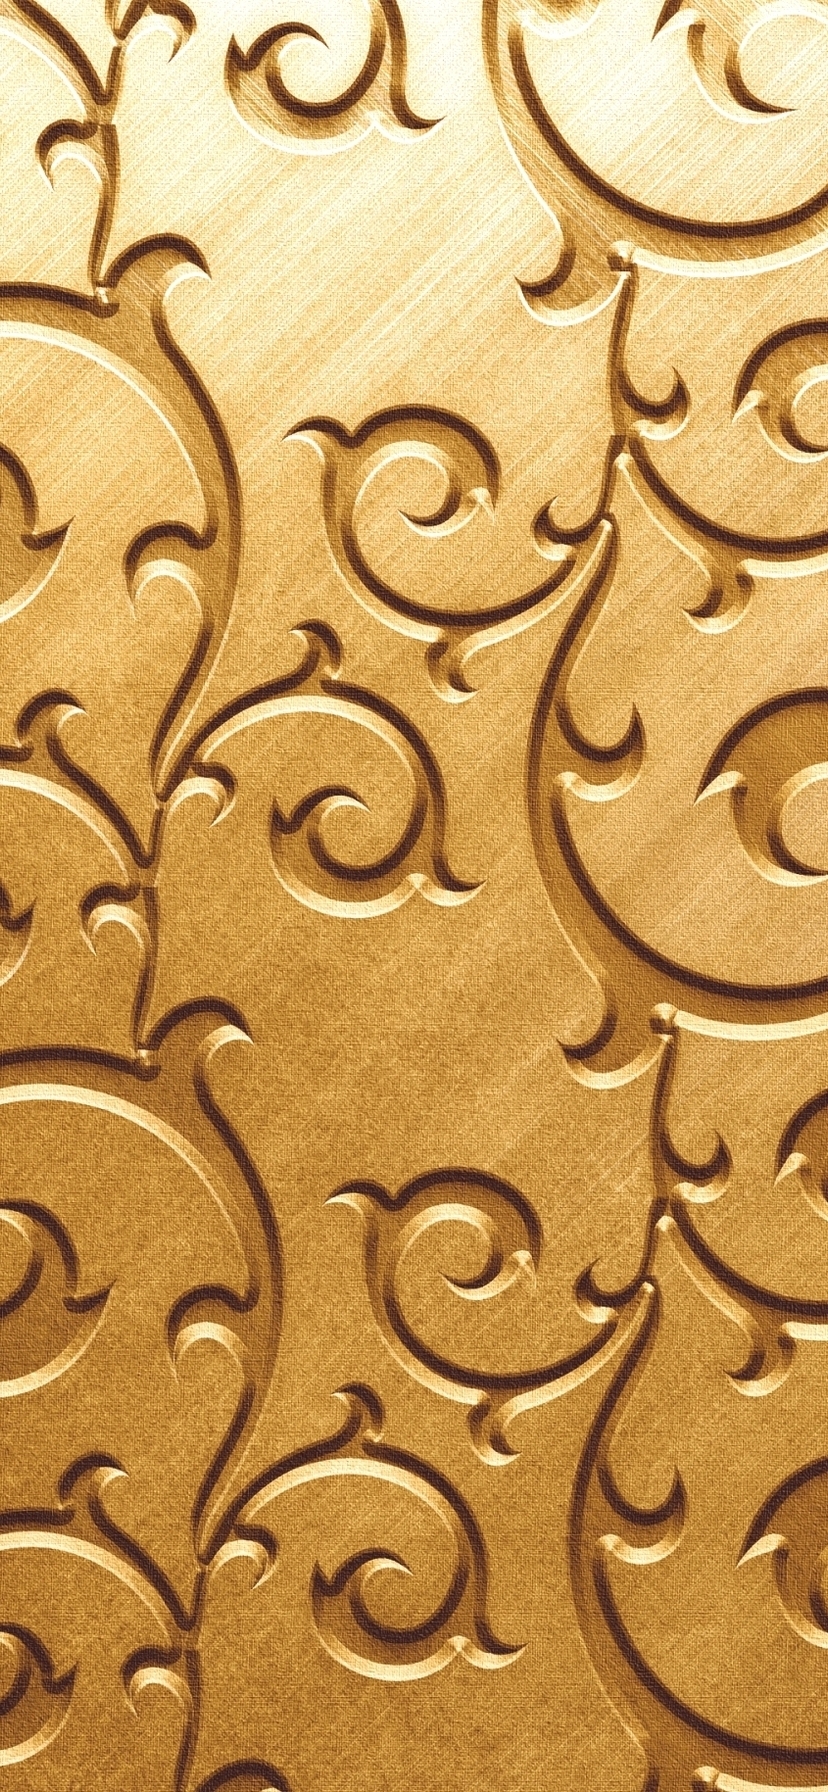 Image: Swirls, pattern, golden background